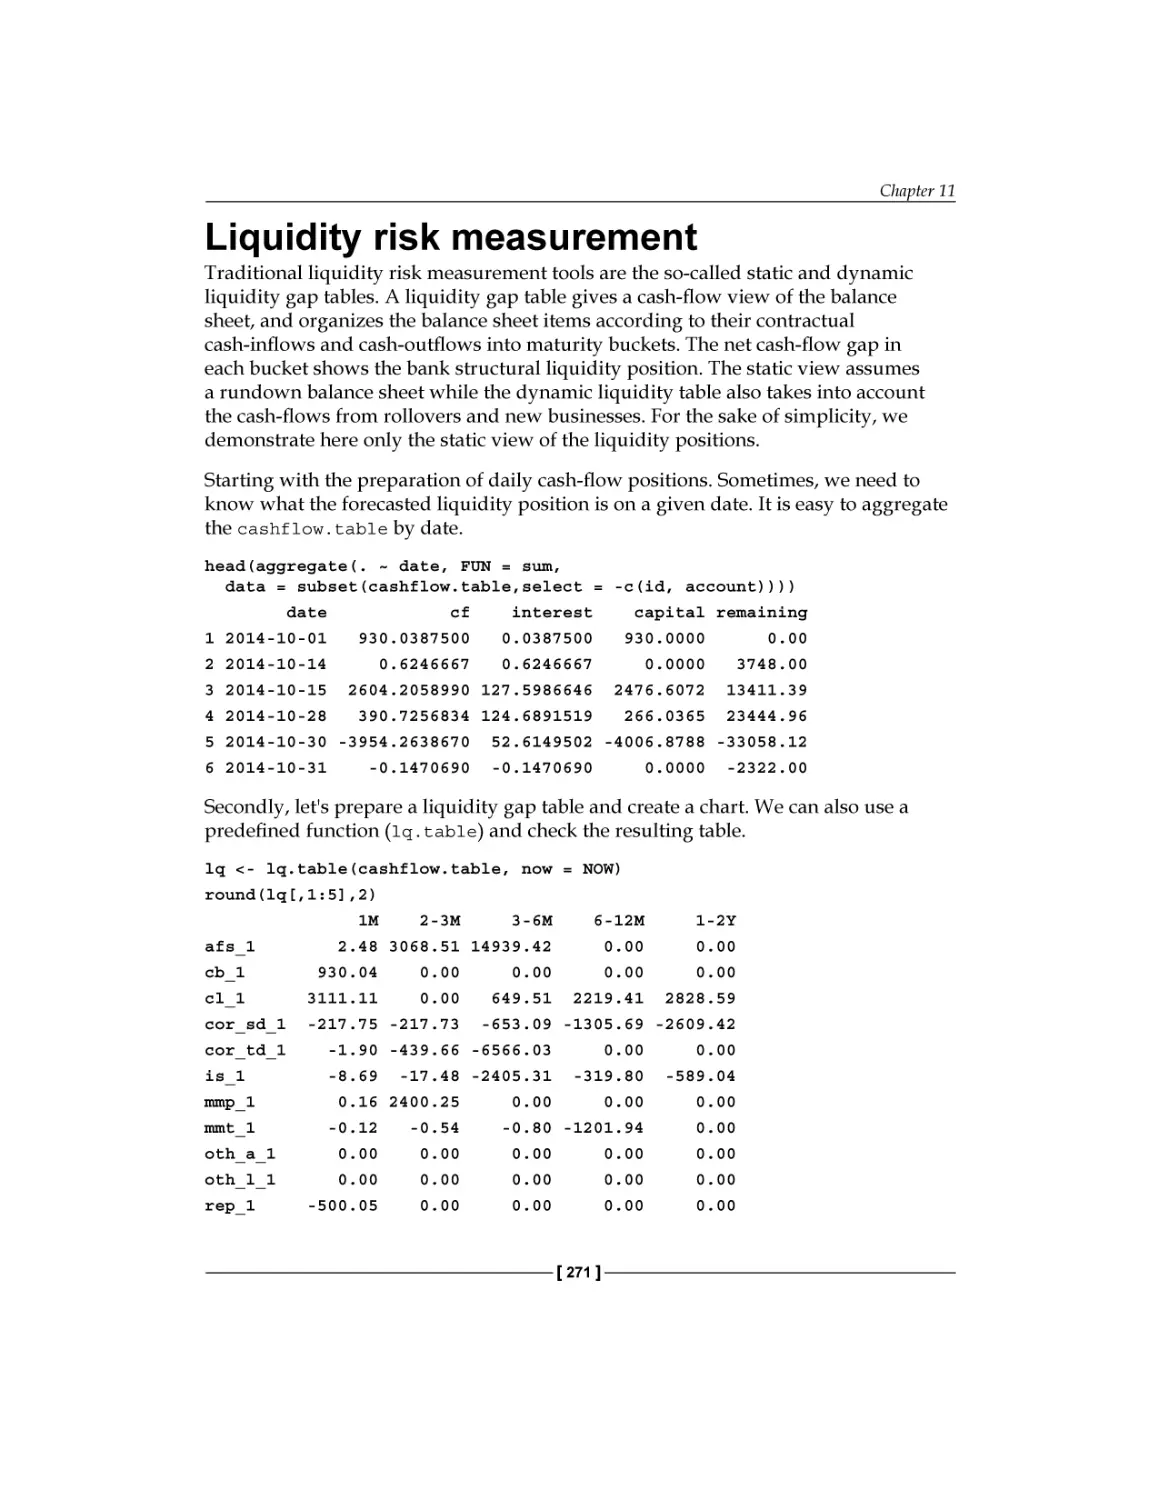 Liquidity risk measurement